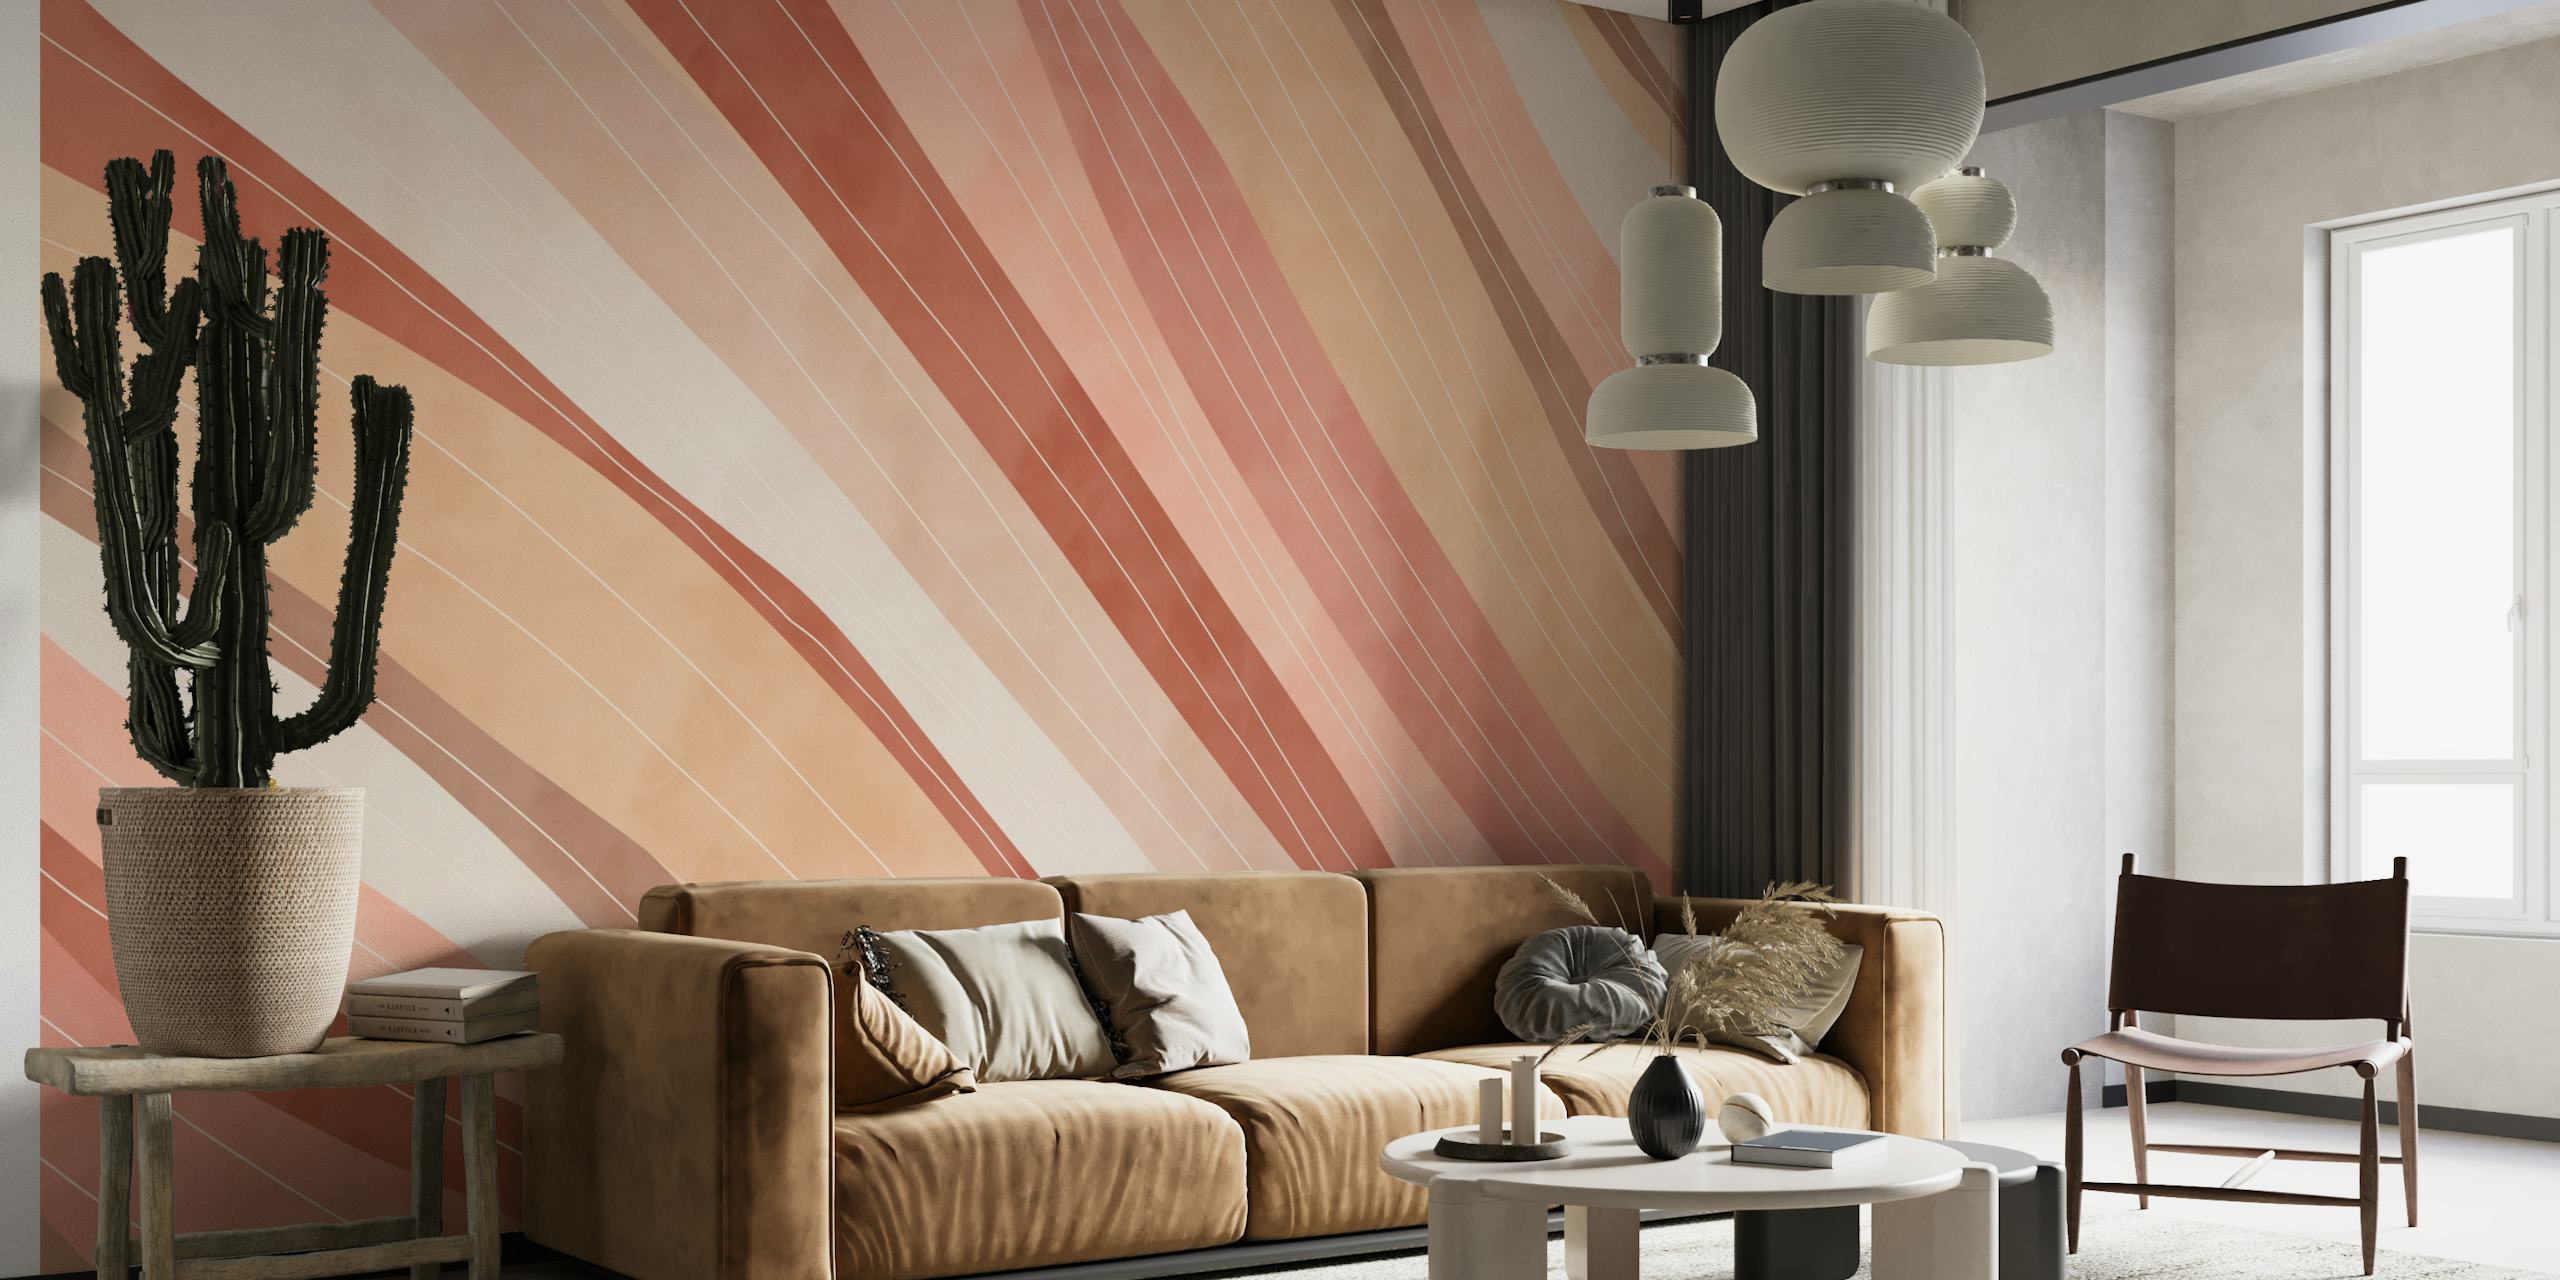 Fotomural vinílico abstrato de linhas rosa e brancas para decoração de interiores moderna